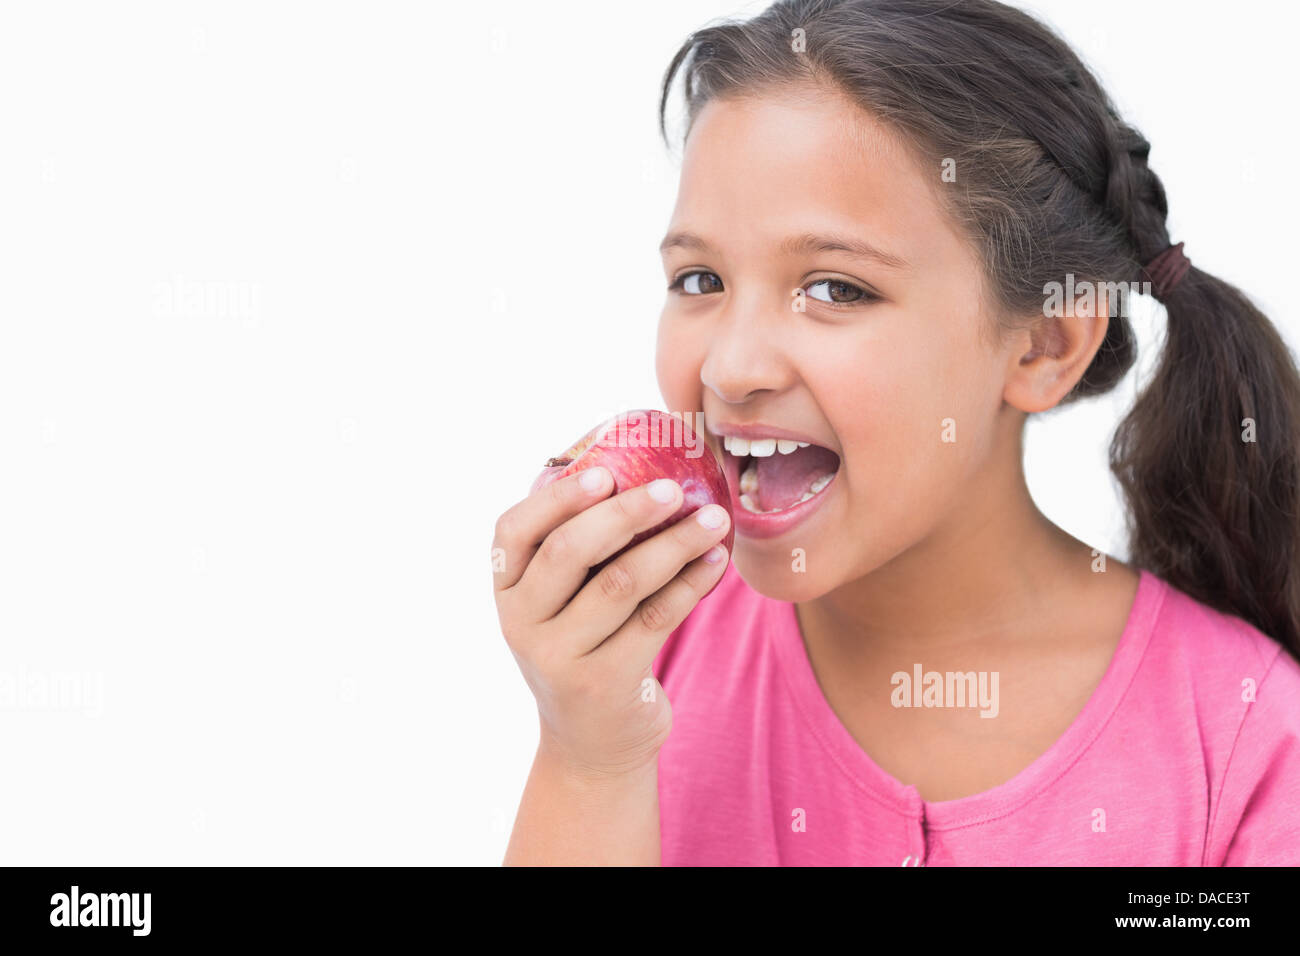 Little girl eating apple Stock Photo